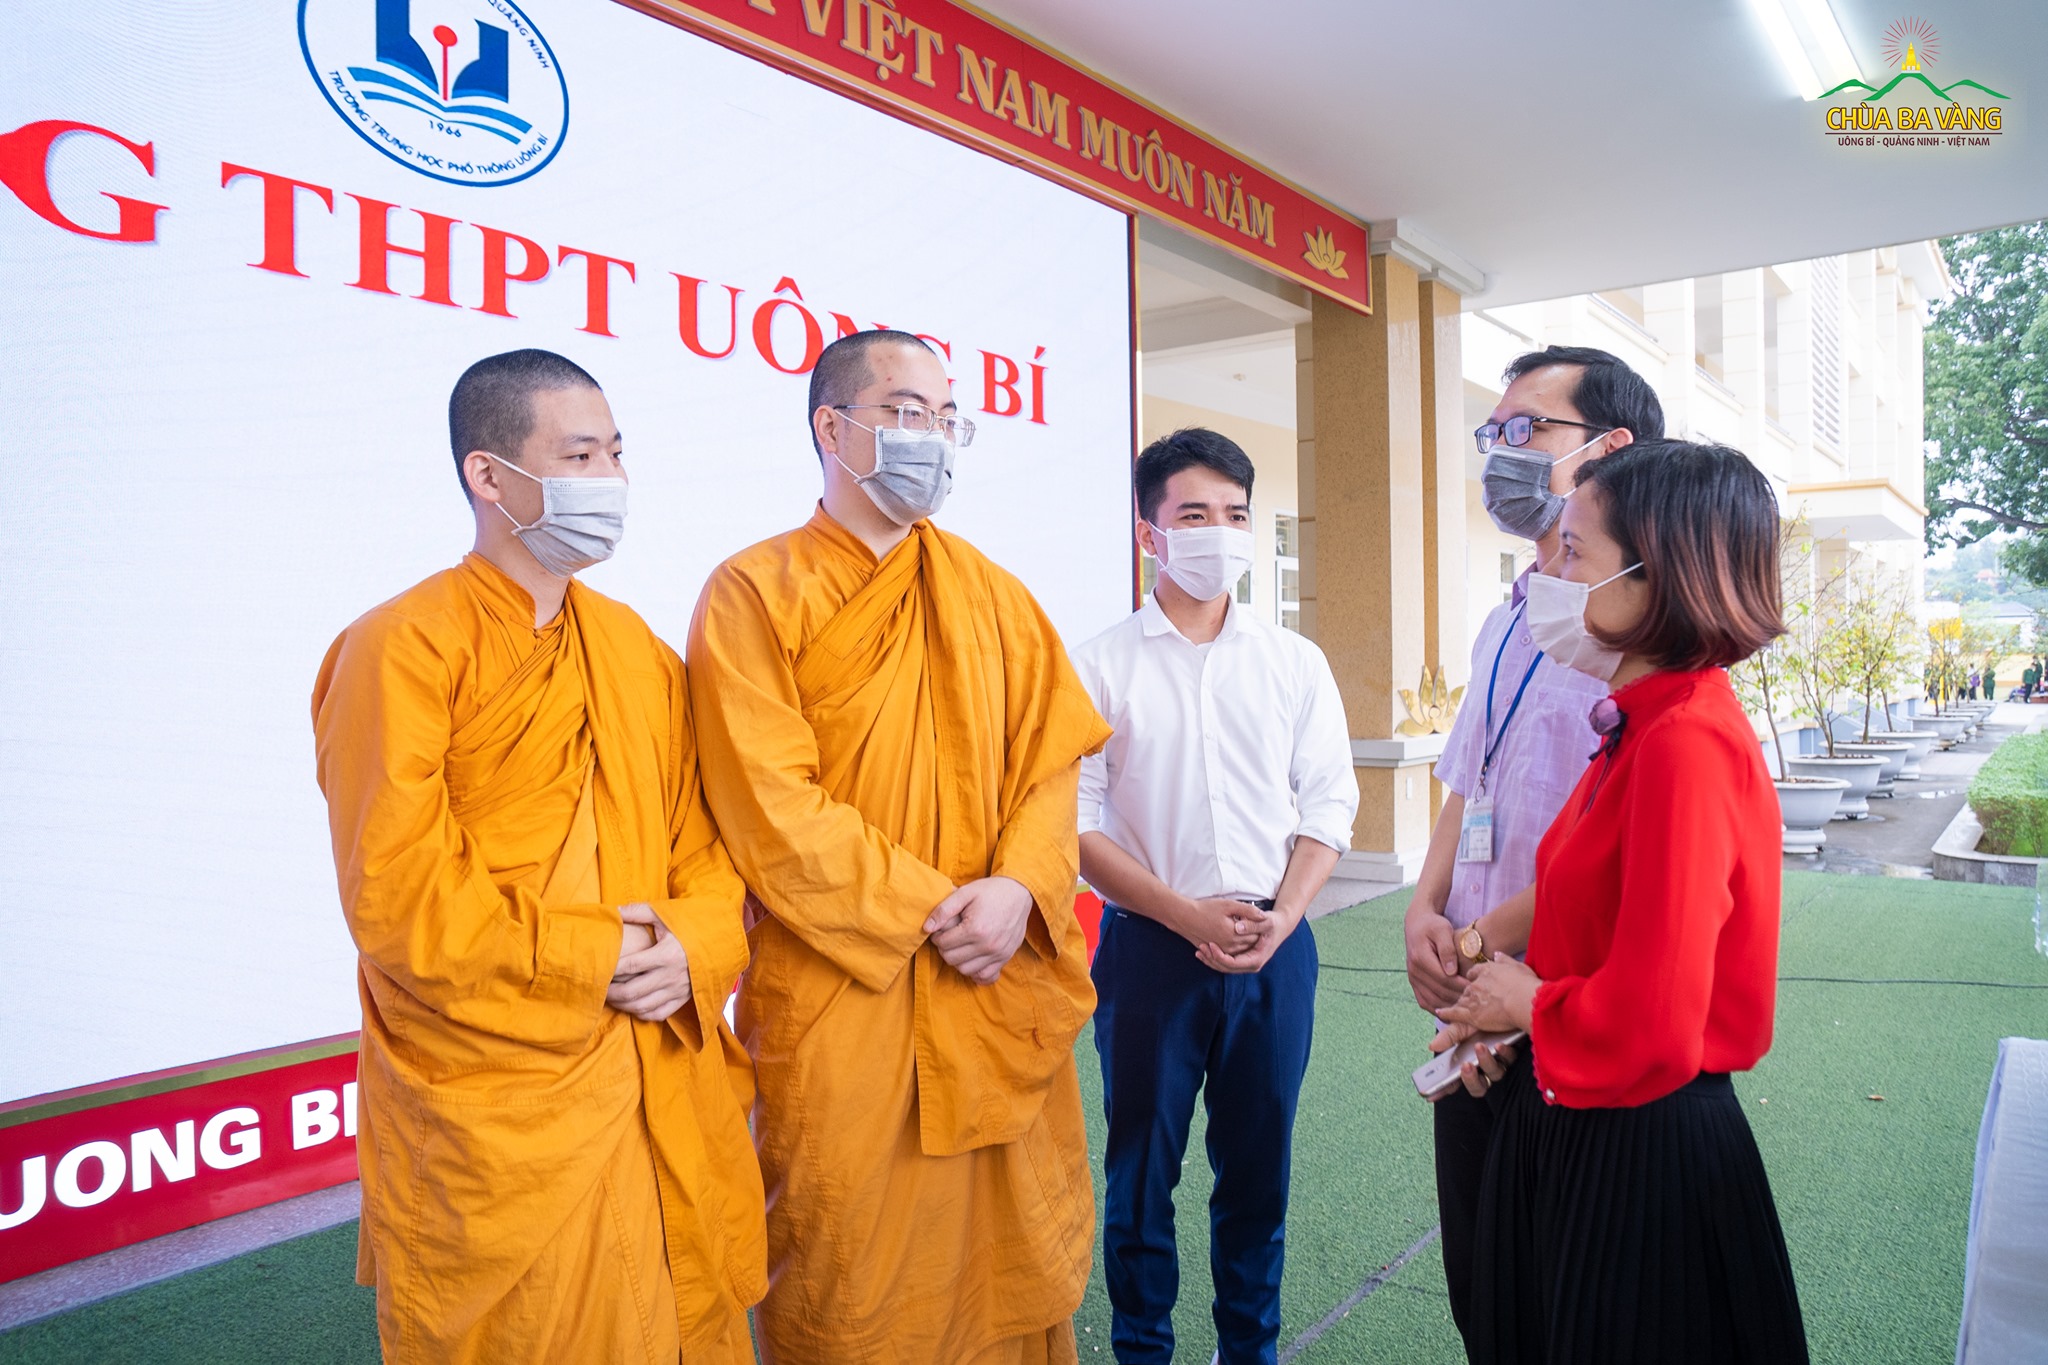 Các thầy cô giáo trường THPT Uông Bí gửi lời cảm ơn đến sự quan tâm của chùa Ba Vàng